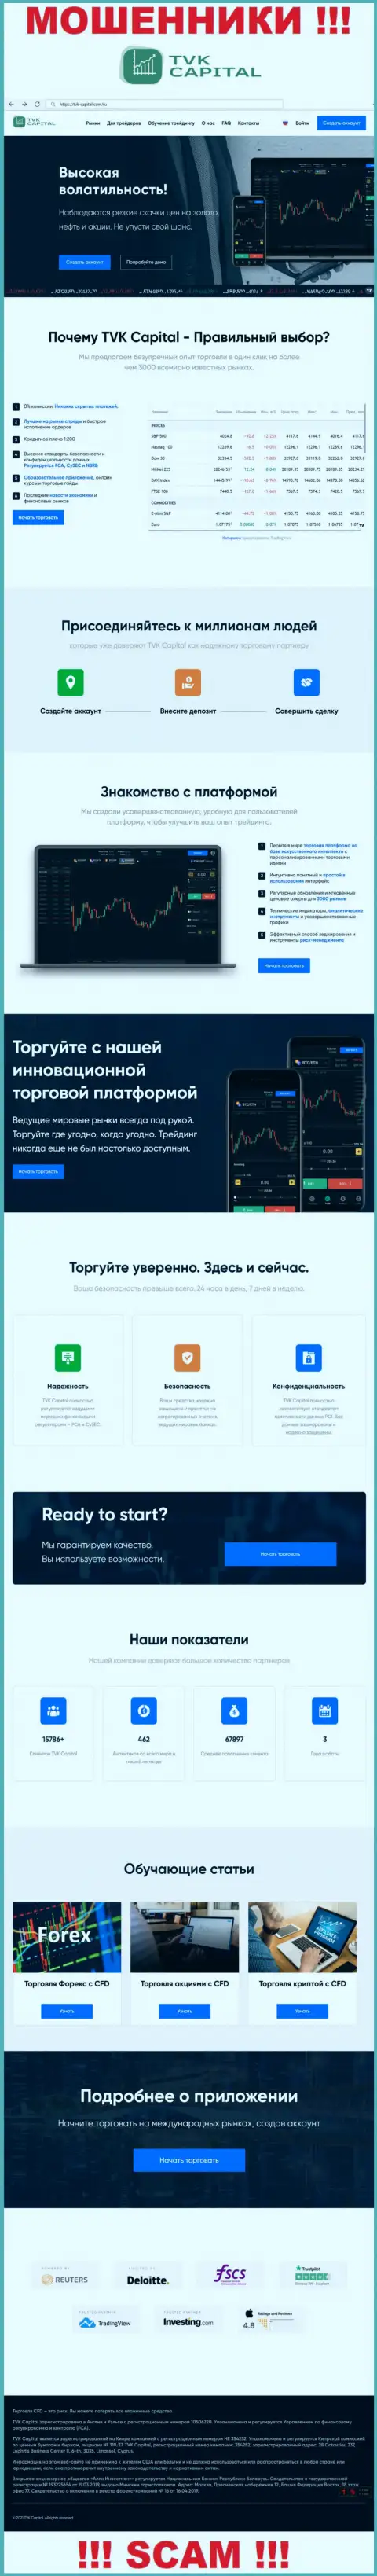 ТВККапитал Ком - это сайт конторы TVK Capital, типичная страница мошенников